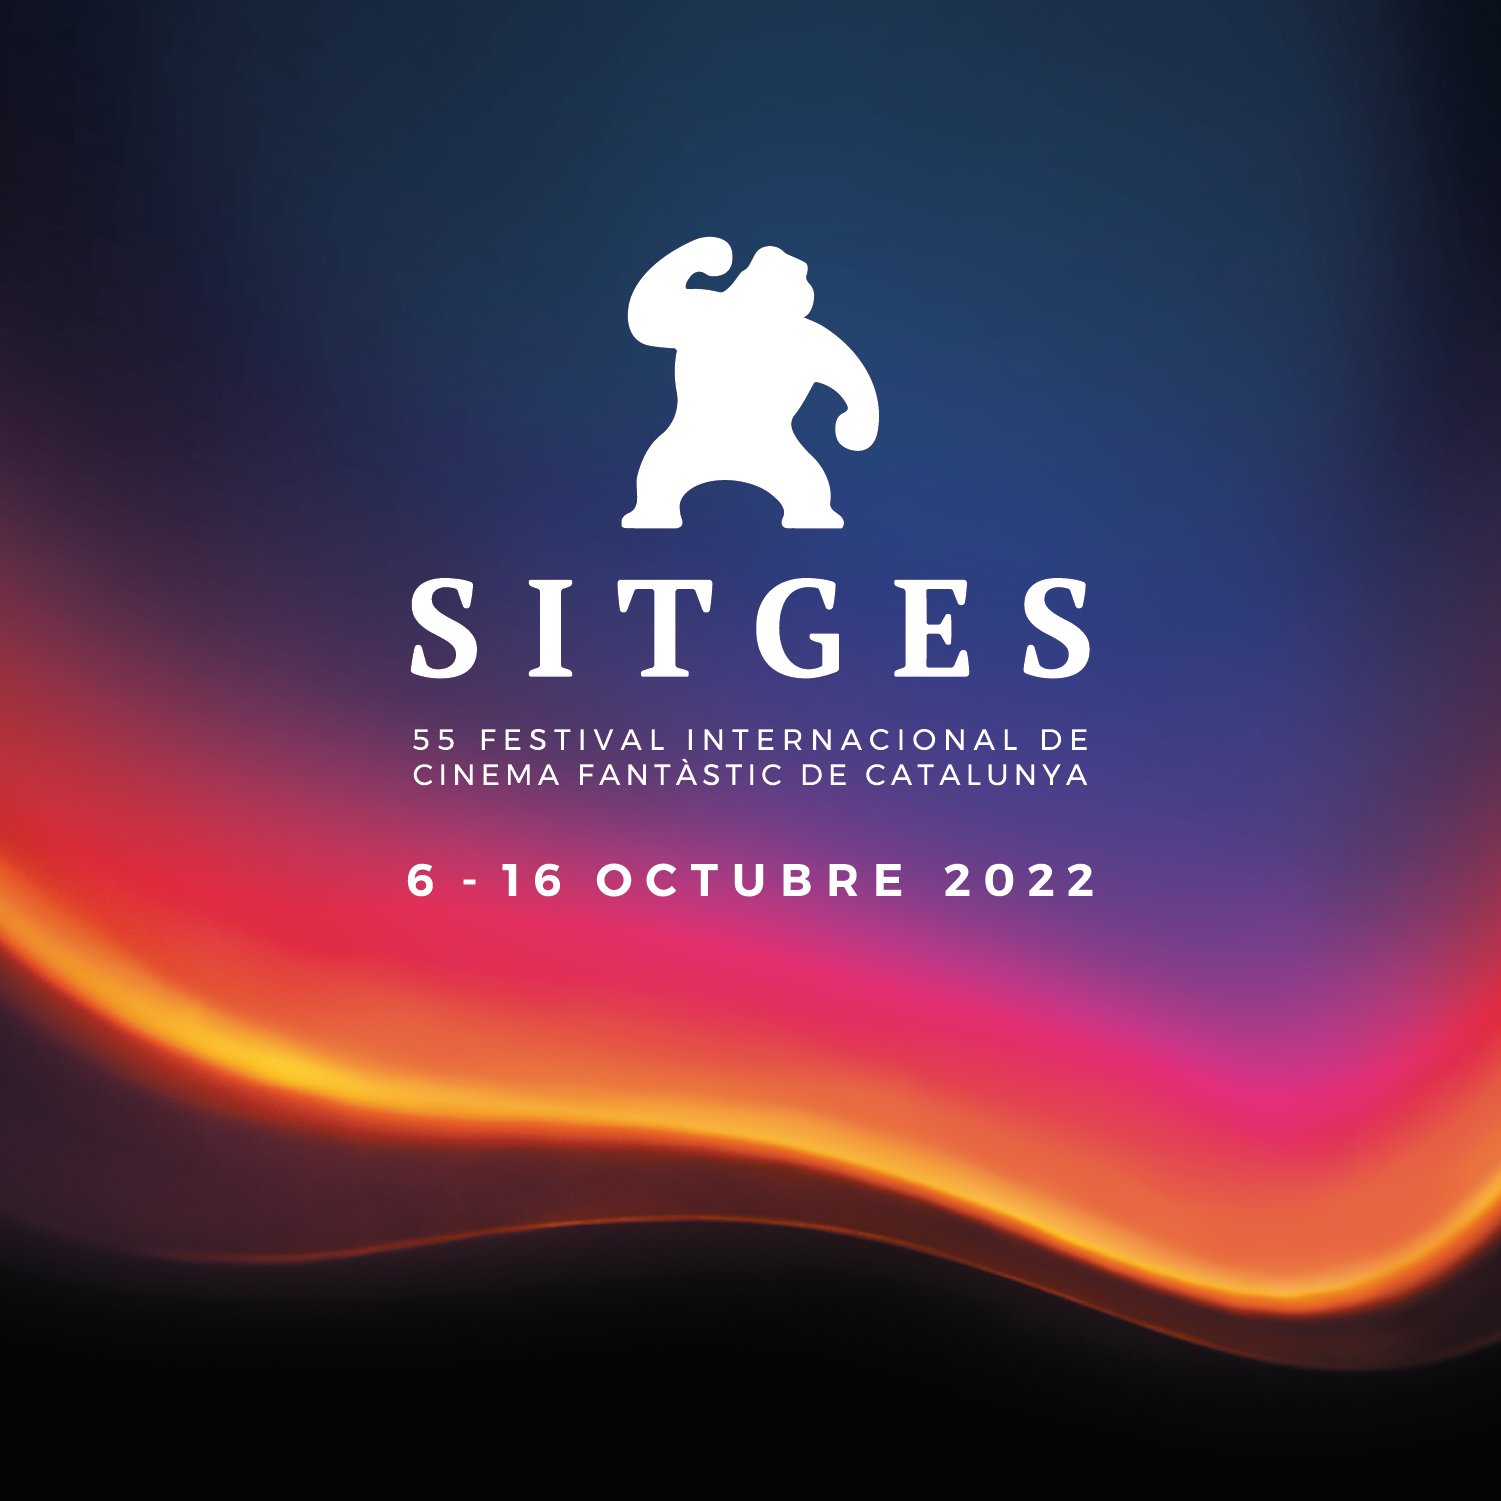 Palmarès del Festival de Sitges 2022: tots els premis, pel·lícula guanyadora i cineastes guardonats